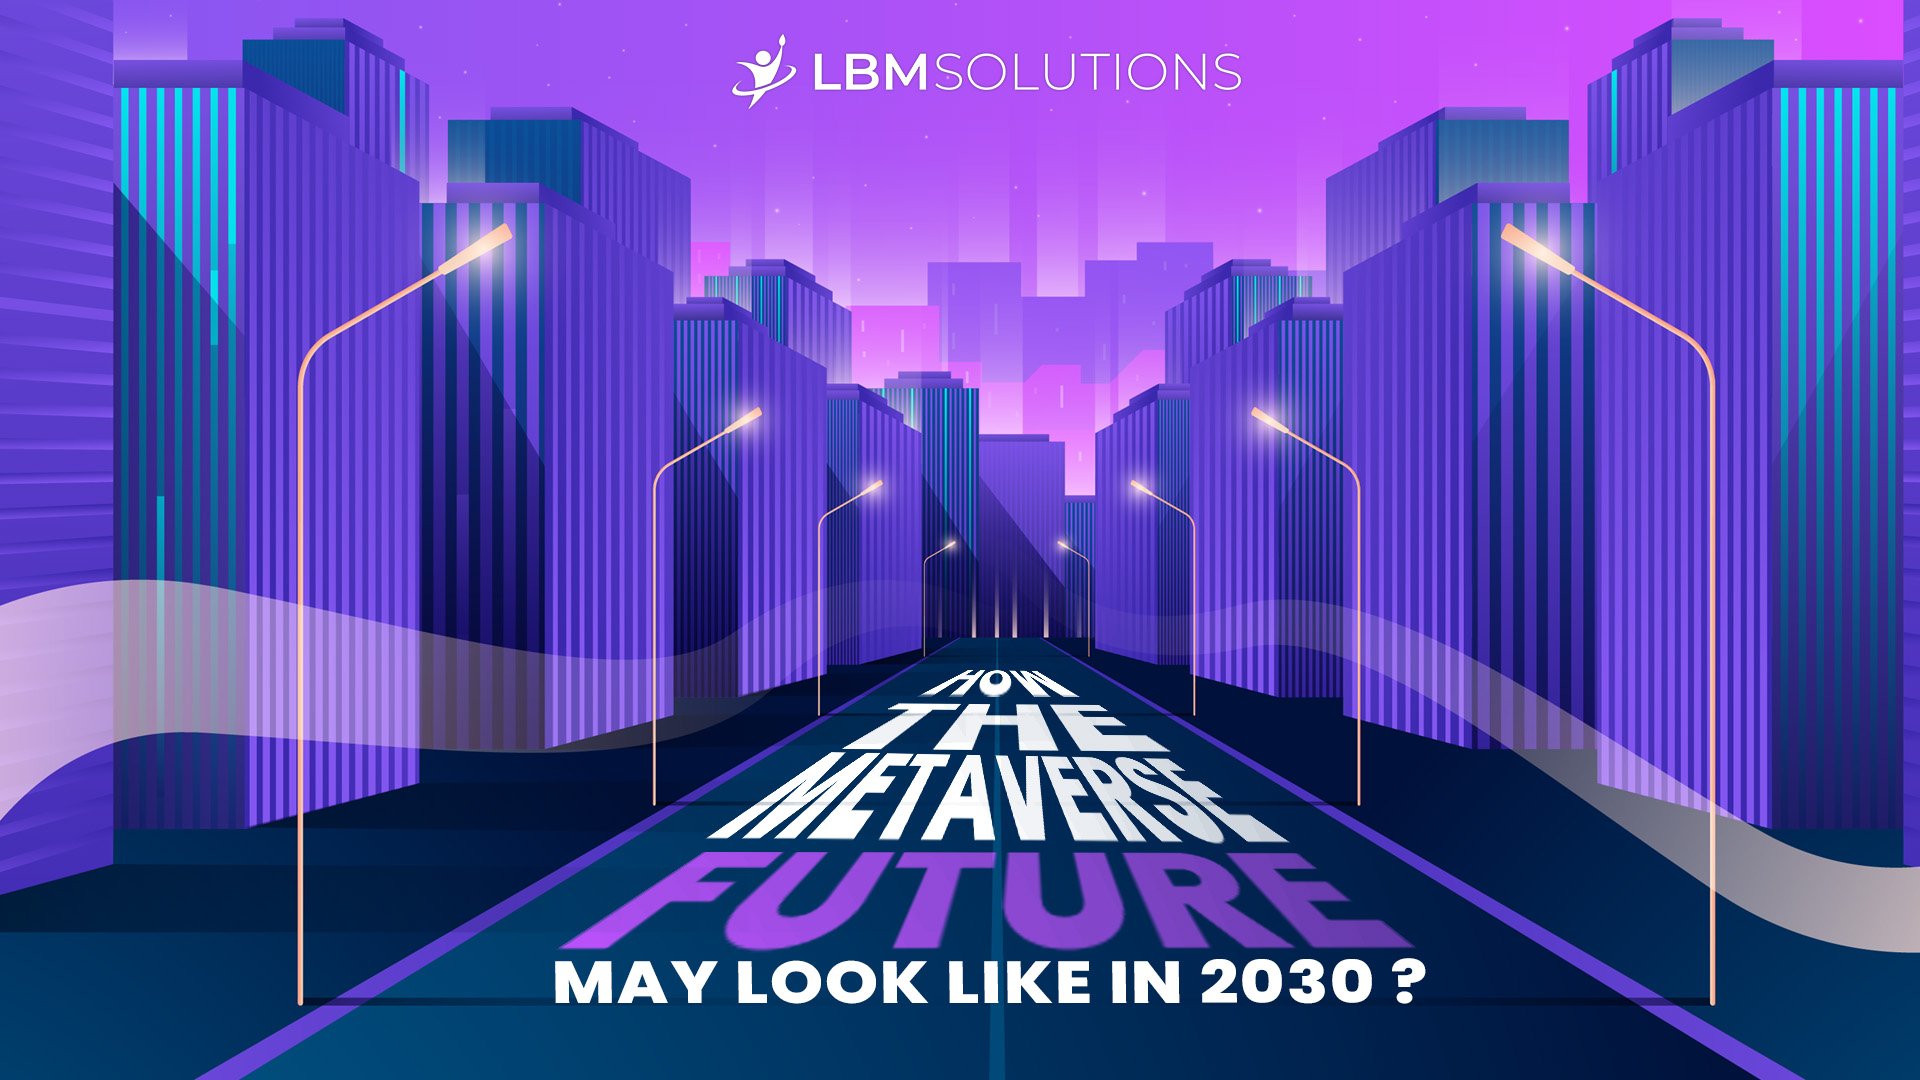 Metaverse Future - LBM Solutions